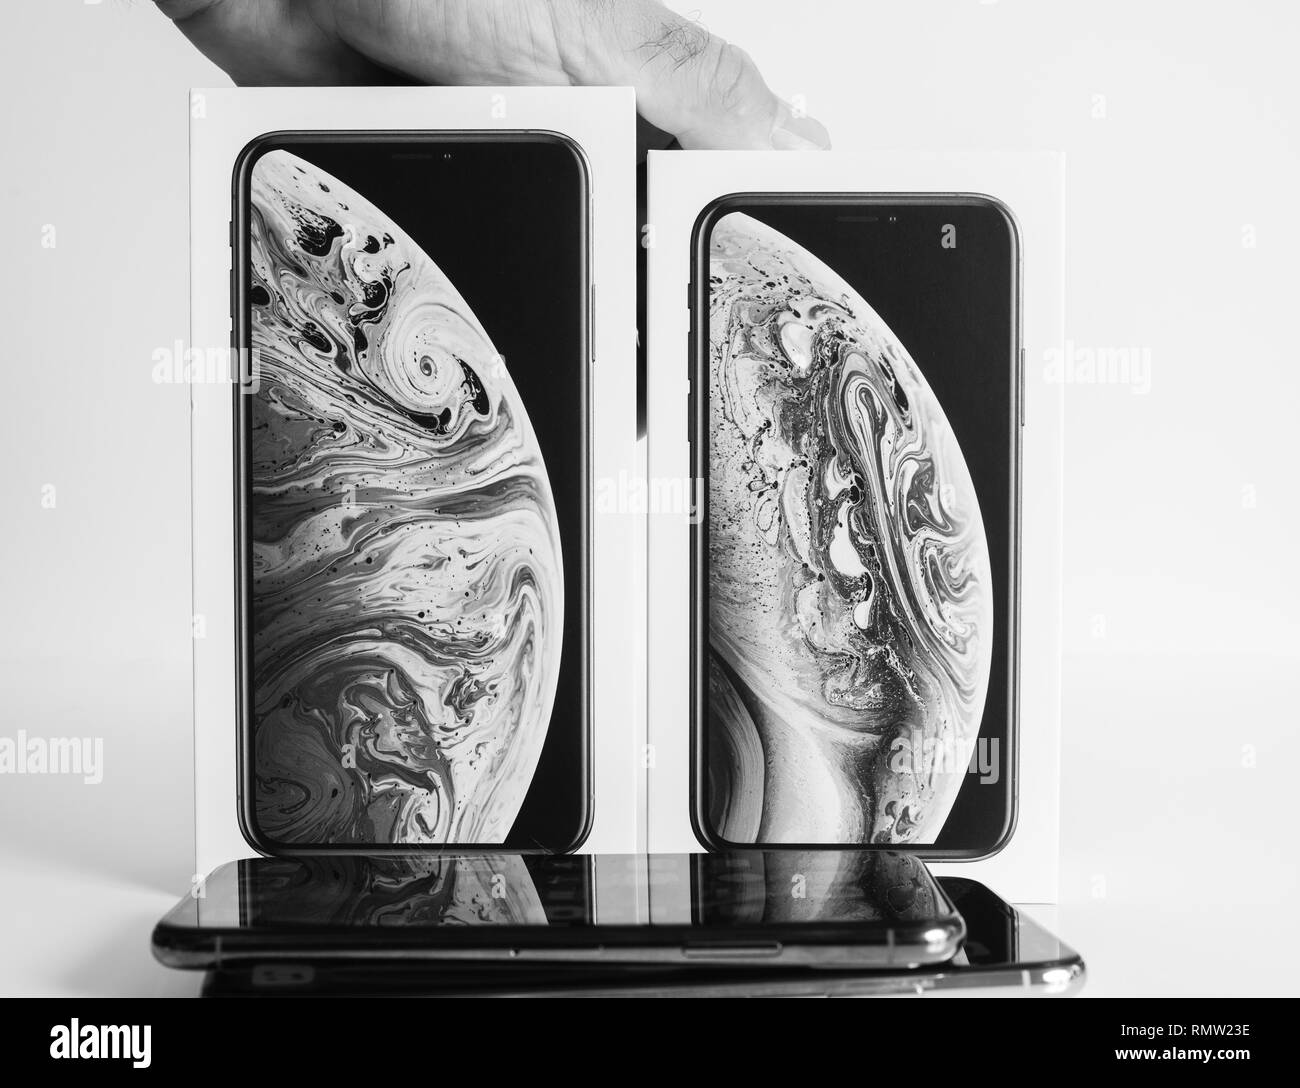 París, Francia - 25 Sep, 2018: Nuevo iPhone smartphones Xs y Xs Max después de unboxing de los nuevos modelos de ordenadores de Apple contra el fondo blanco. Foto de stock